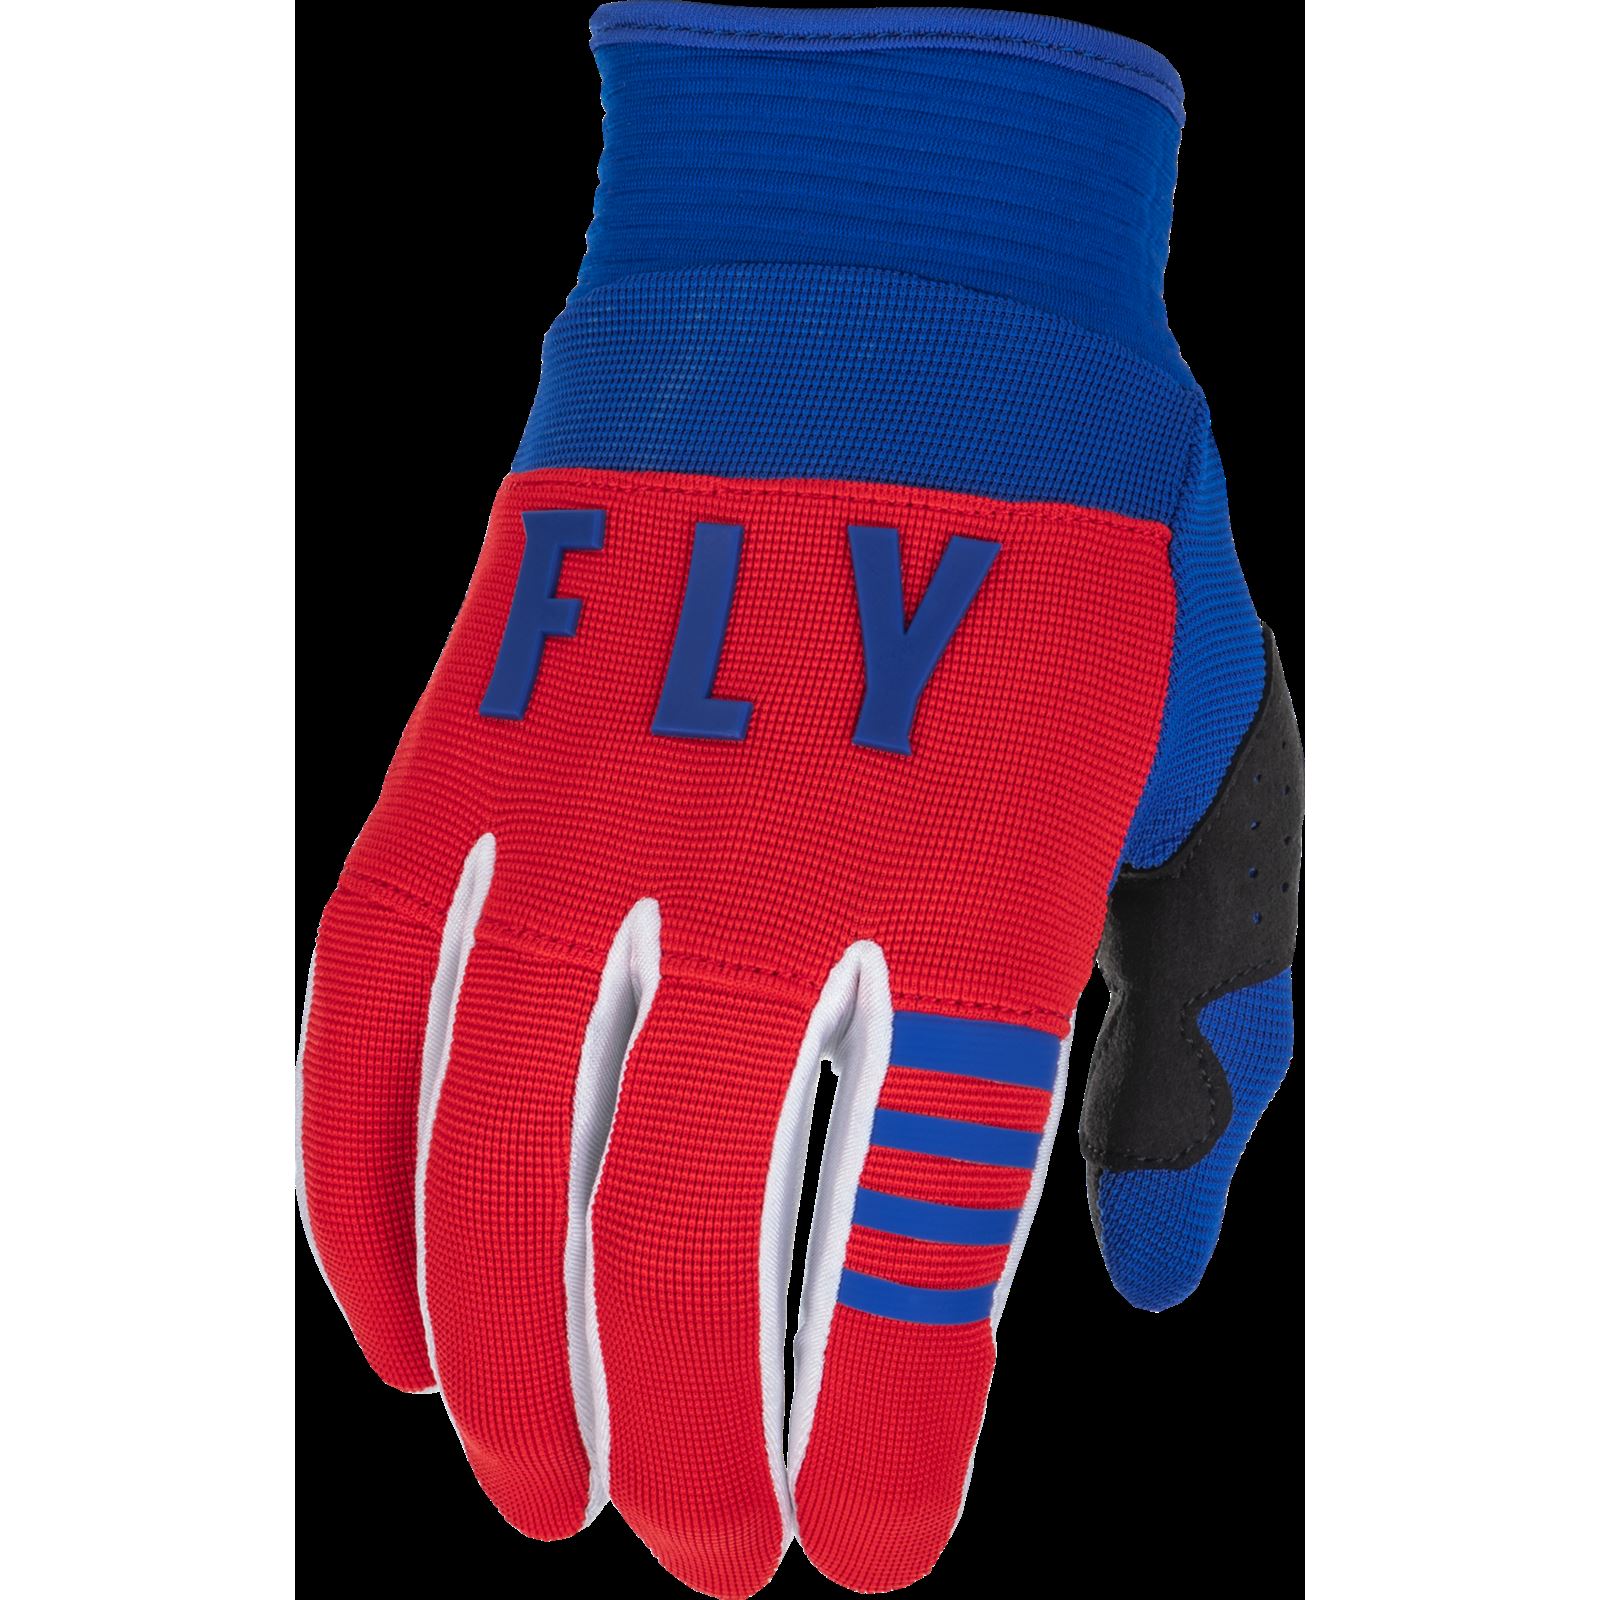 Fly Racing Unisex-Adult Mix Socks Thin Orange/Blue/Black Large/X-Large 